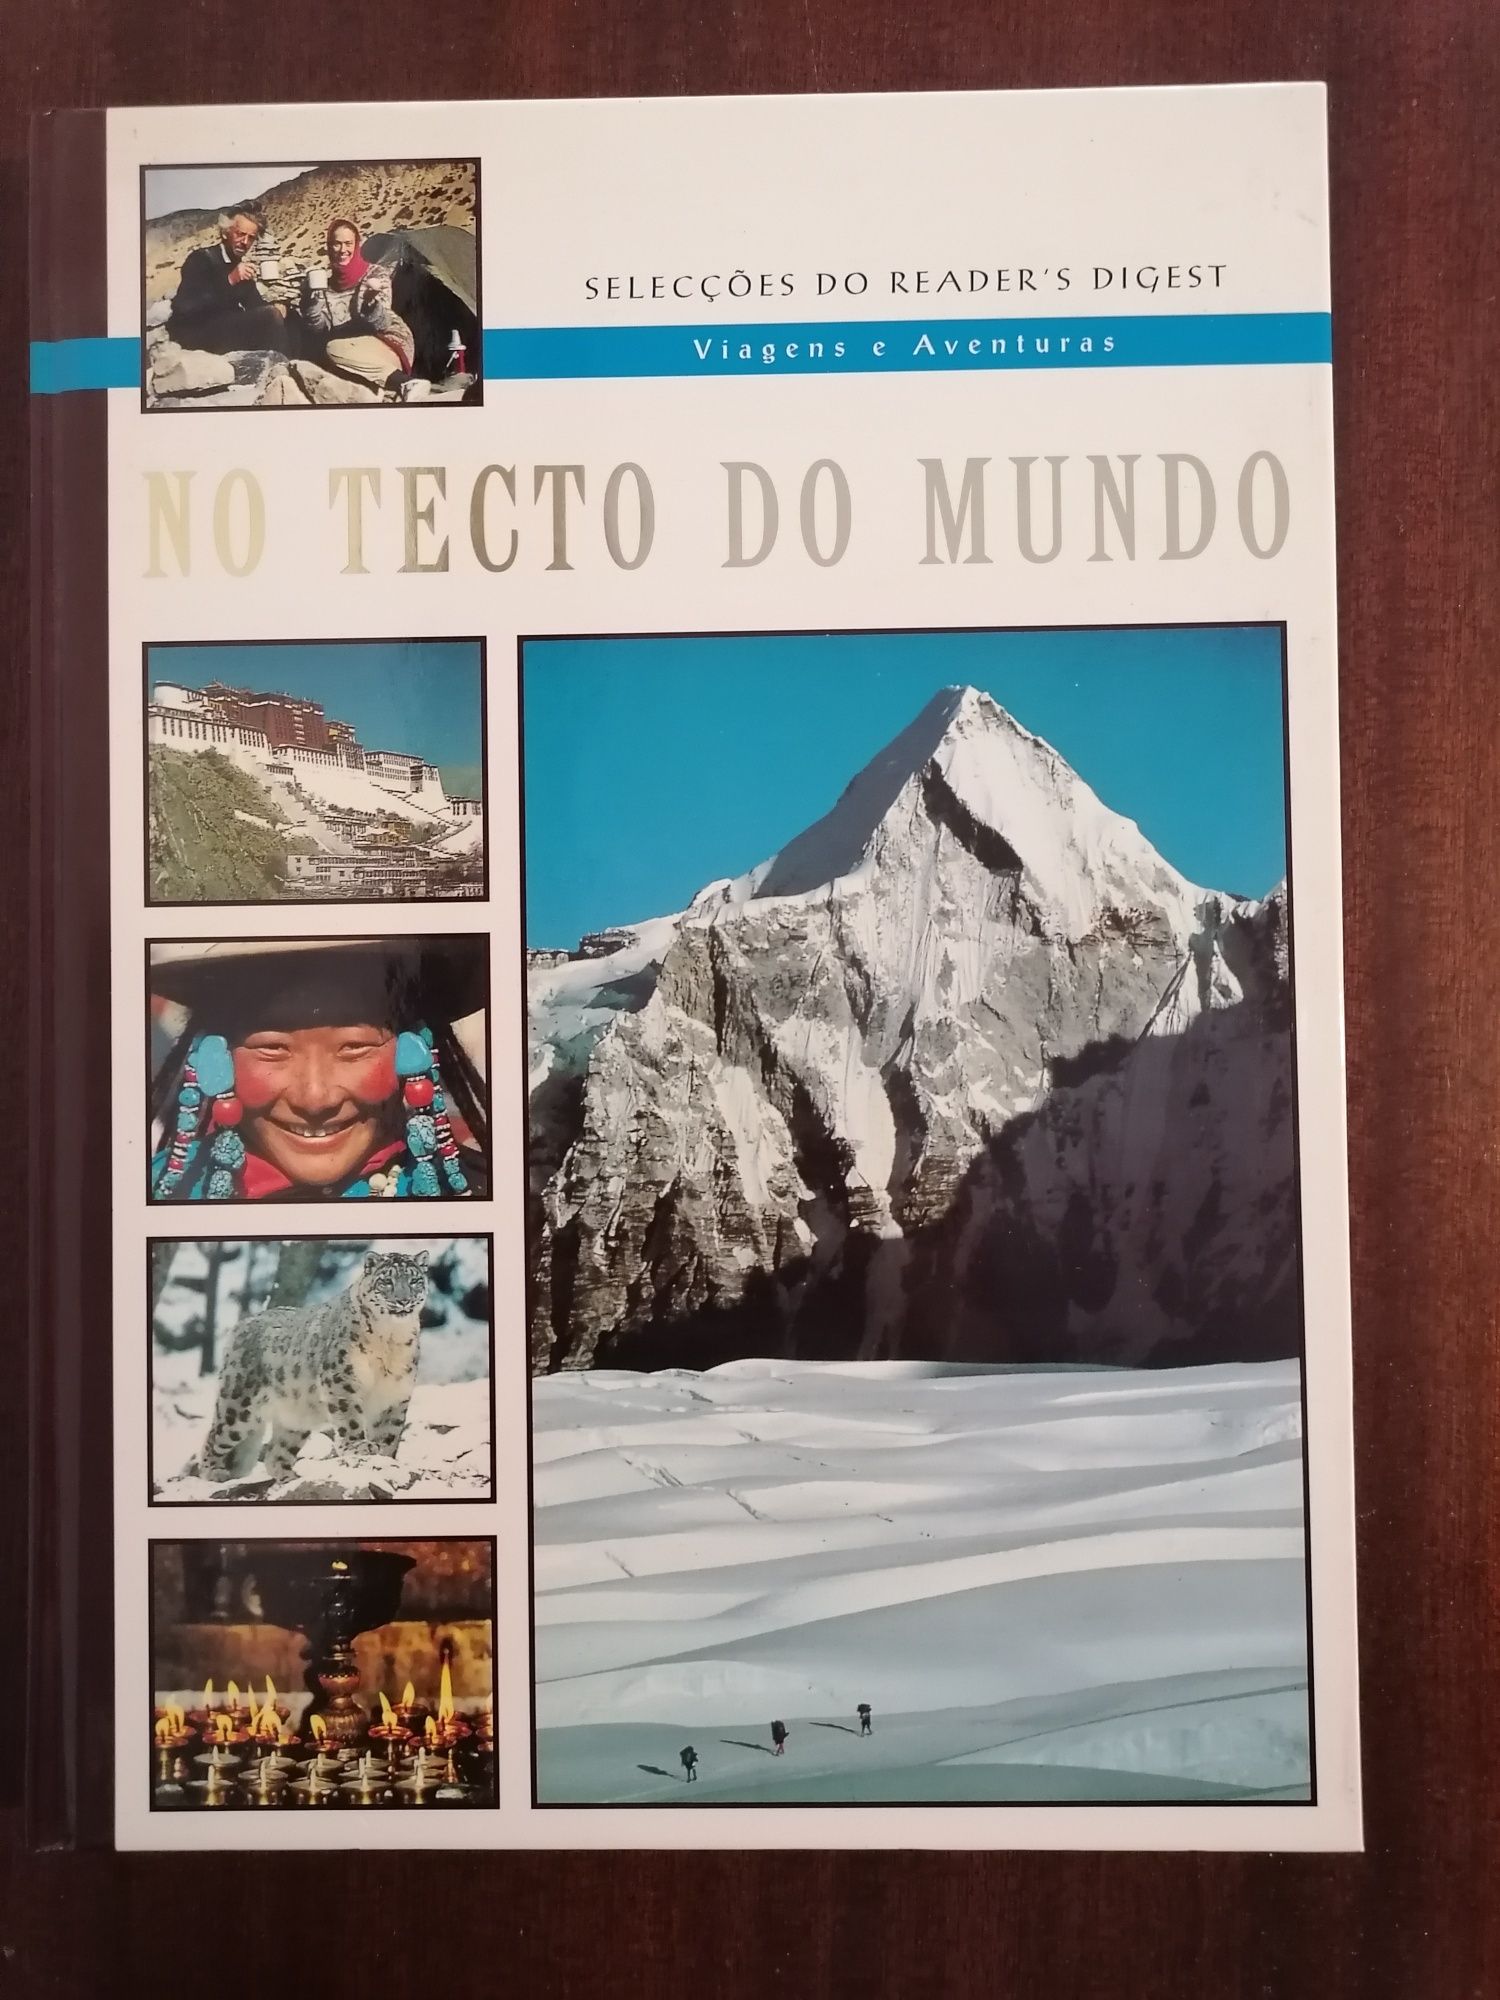 Enciclopédia Viagens e Aventuras "No tecto do Mundo"